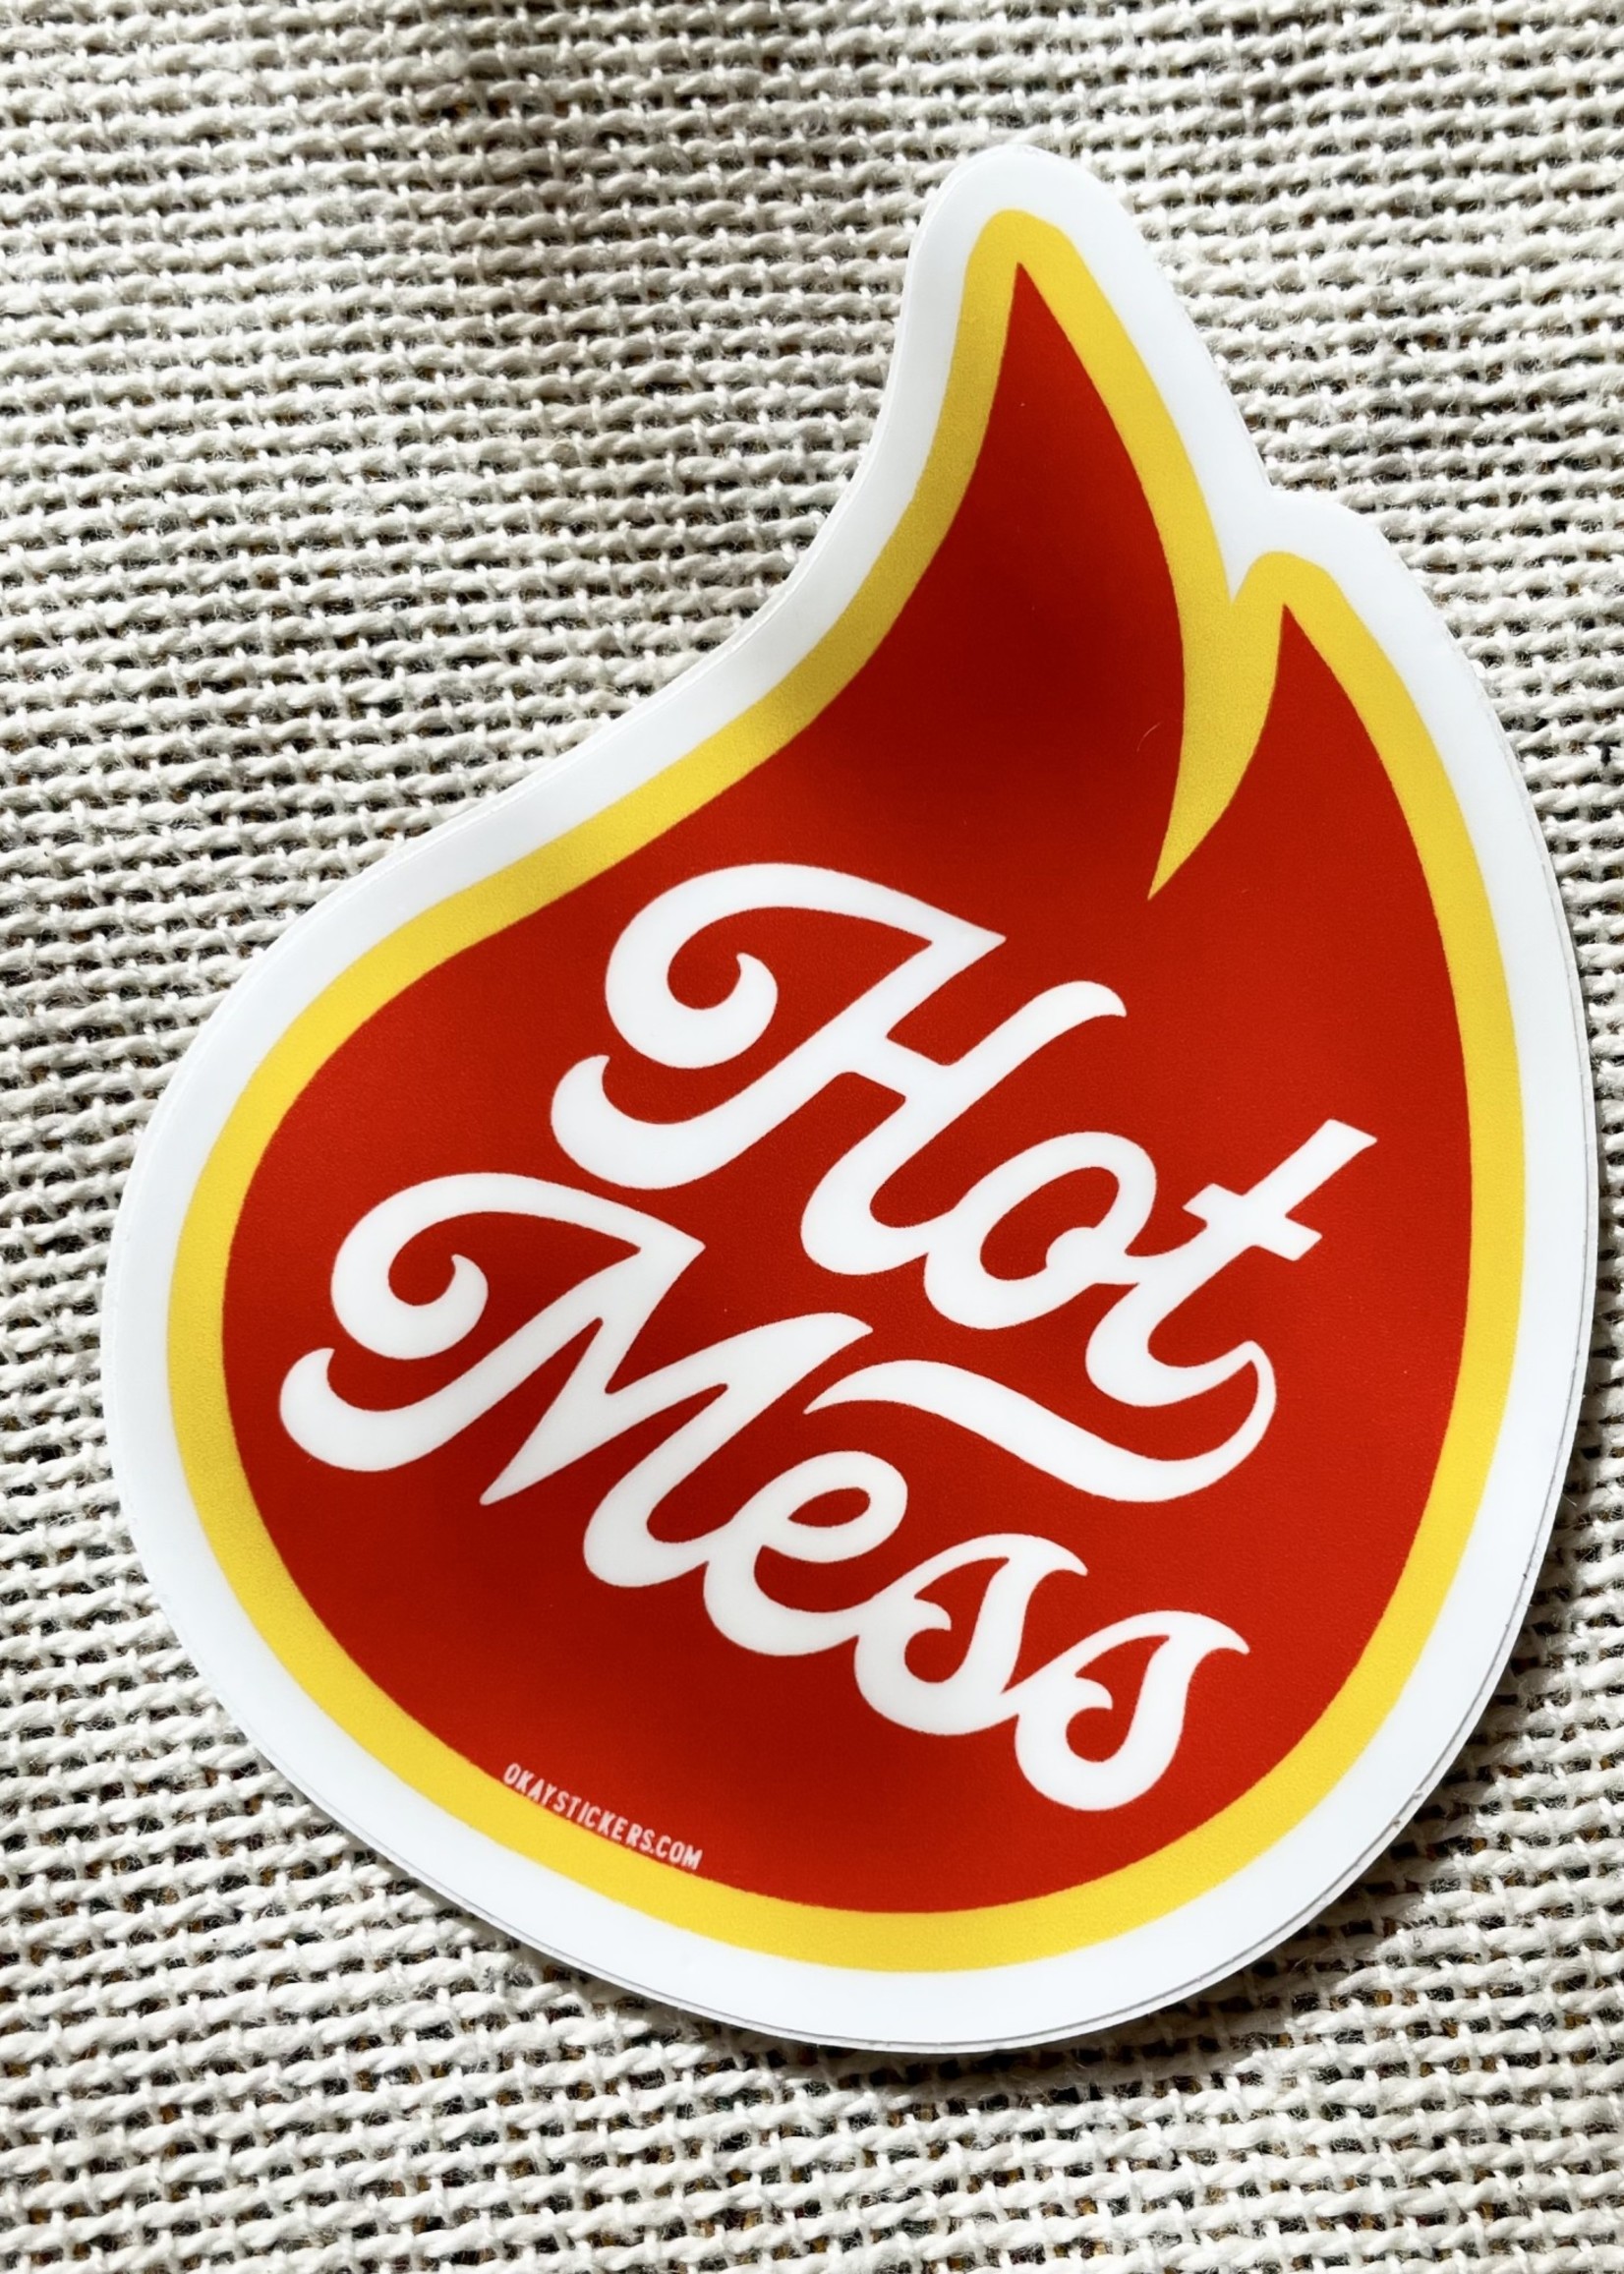 Hot Mess Sticker